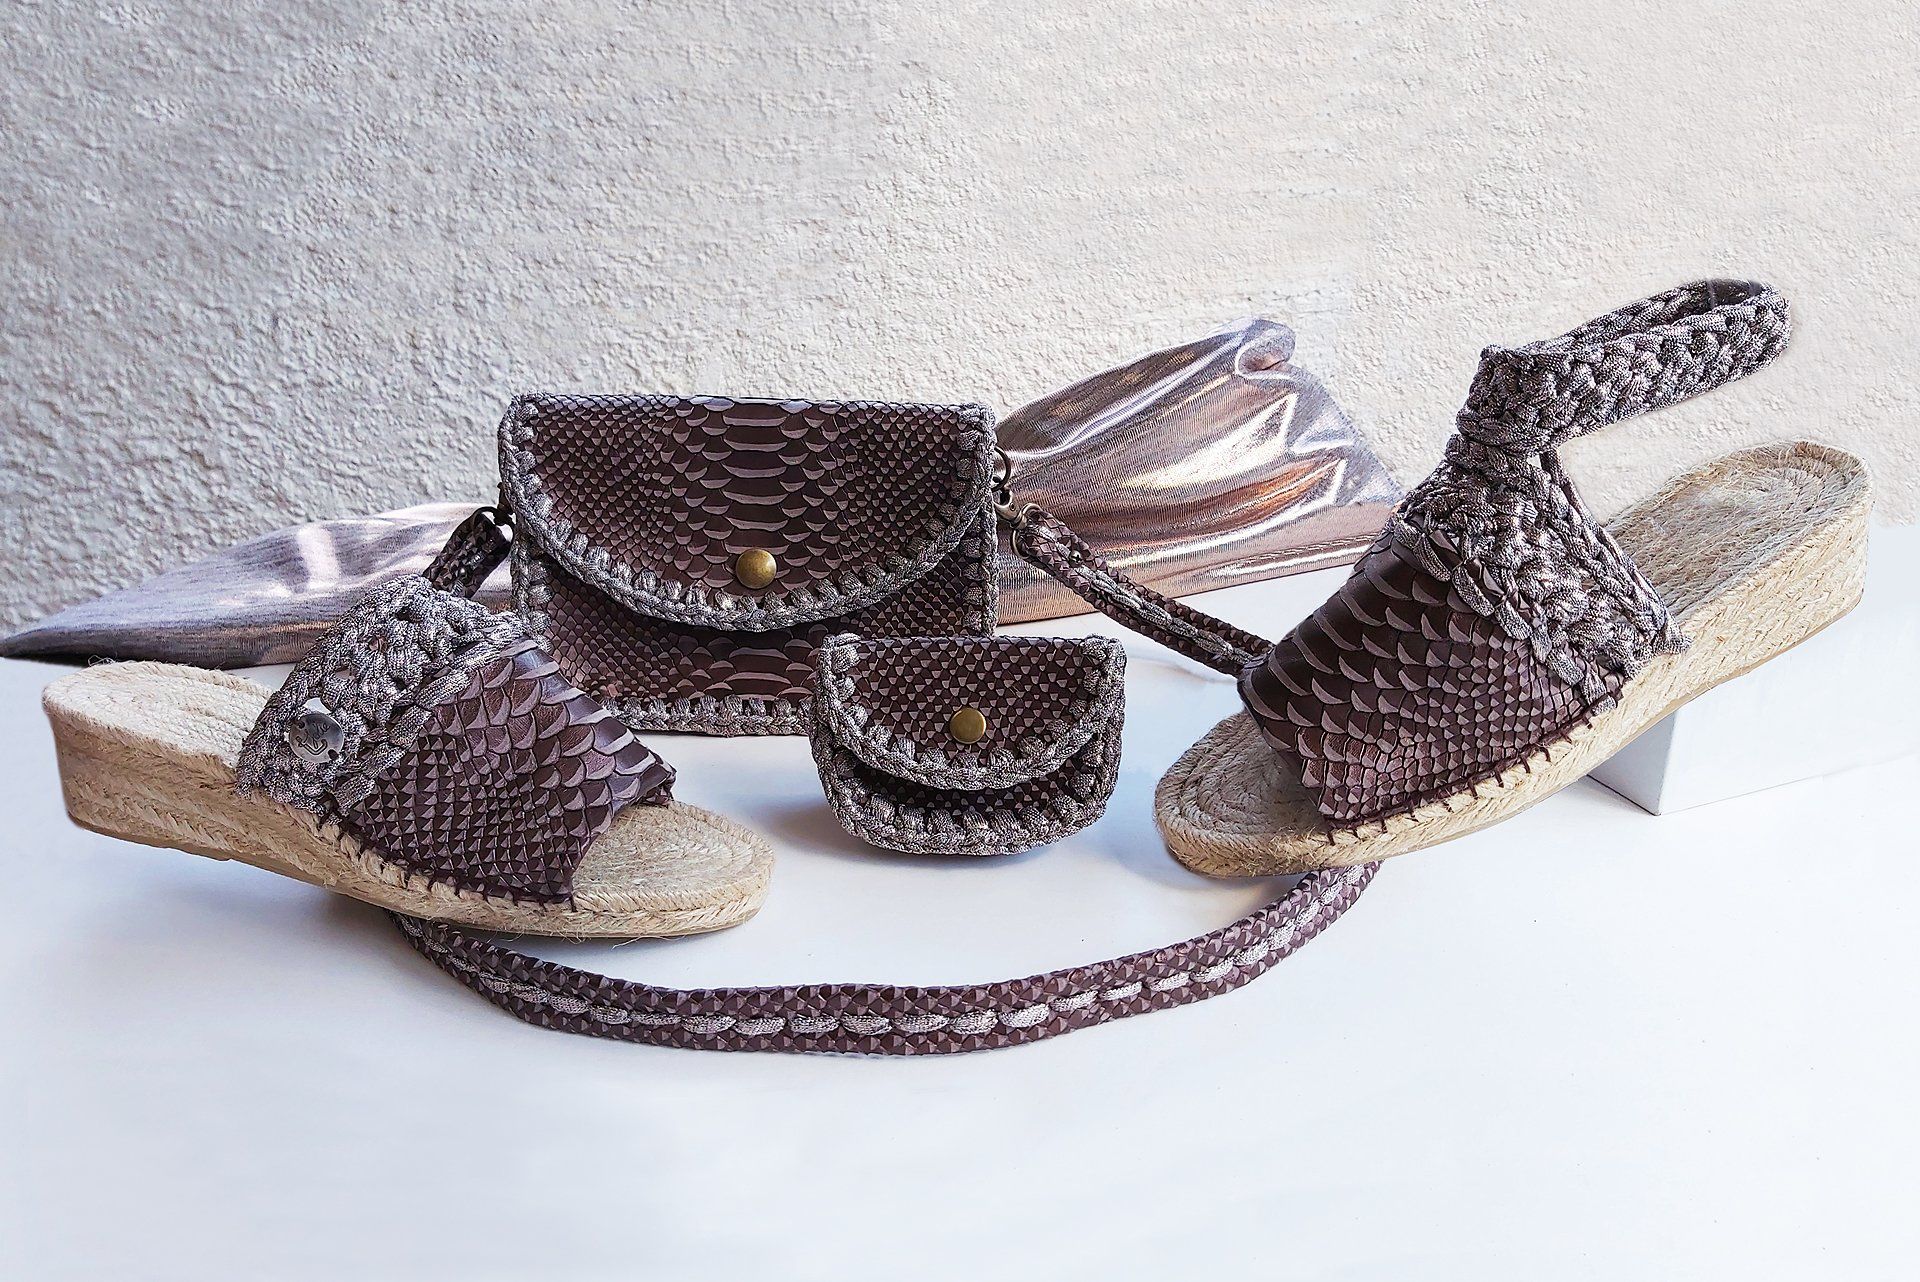 T-jolie , creatrice de chaussures façon espadrilles, sac à main en cuir de veau motif serpent et crochet métallisée cuivre.